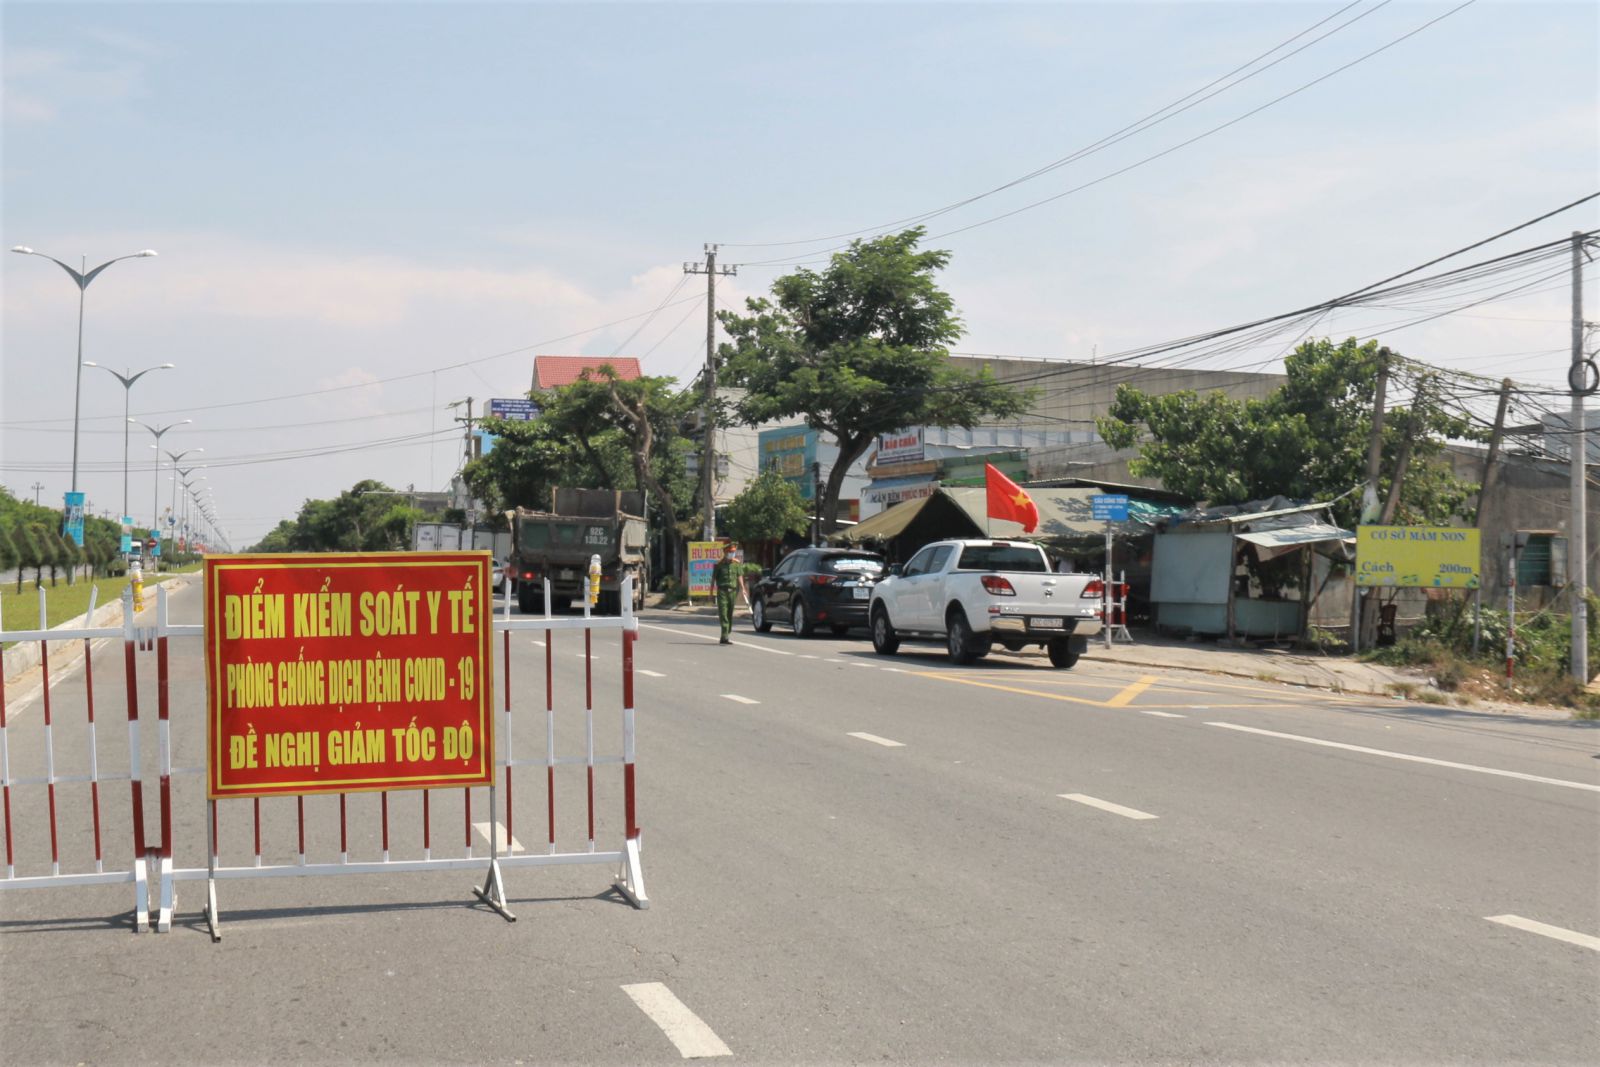 Quảng Nam thành lập các chốt kiểm soát dịch để kiểm tra người từ địa phương khác đến.